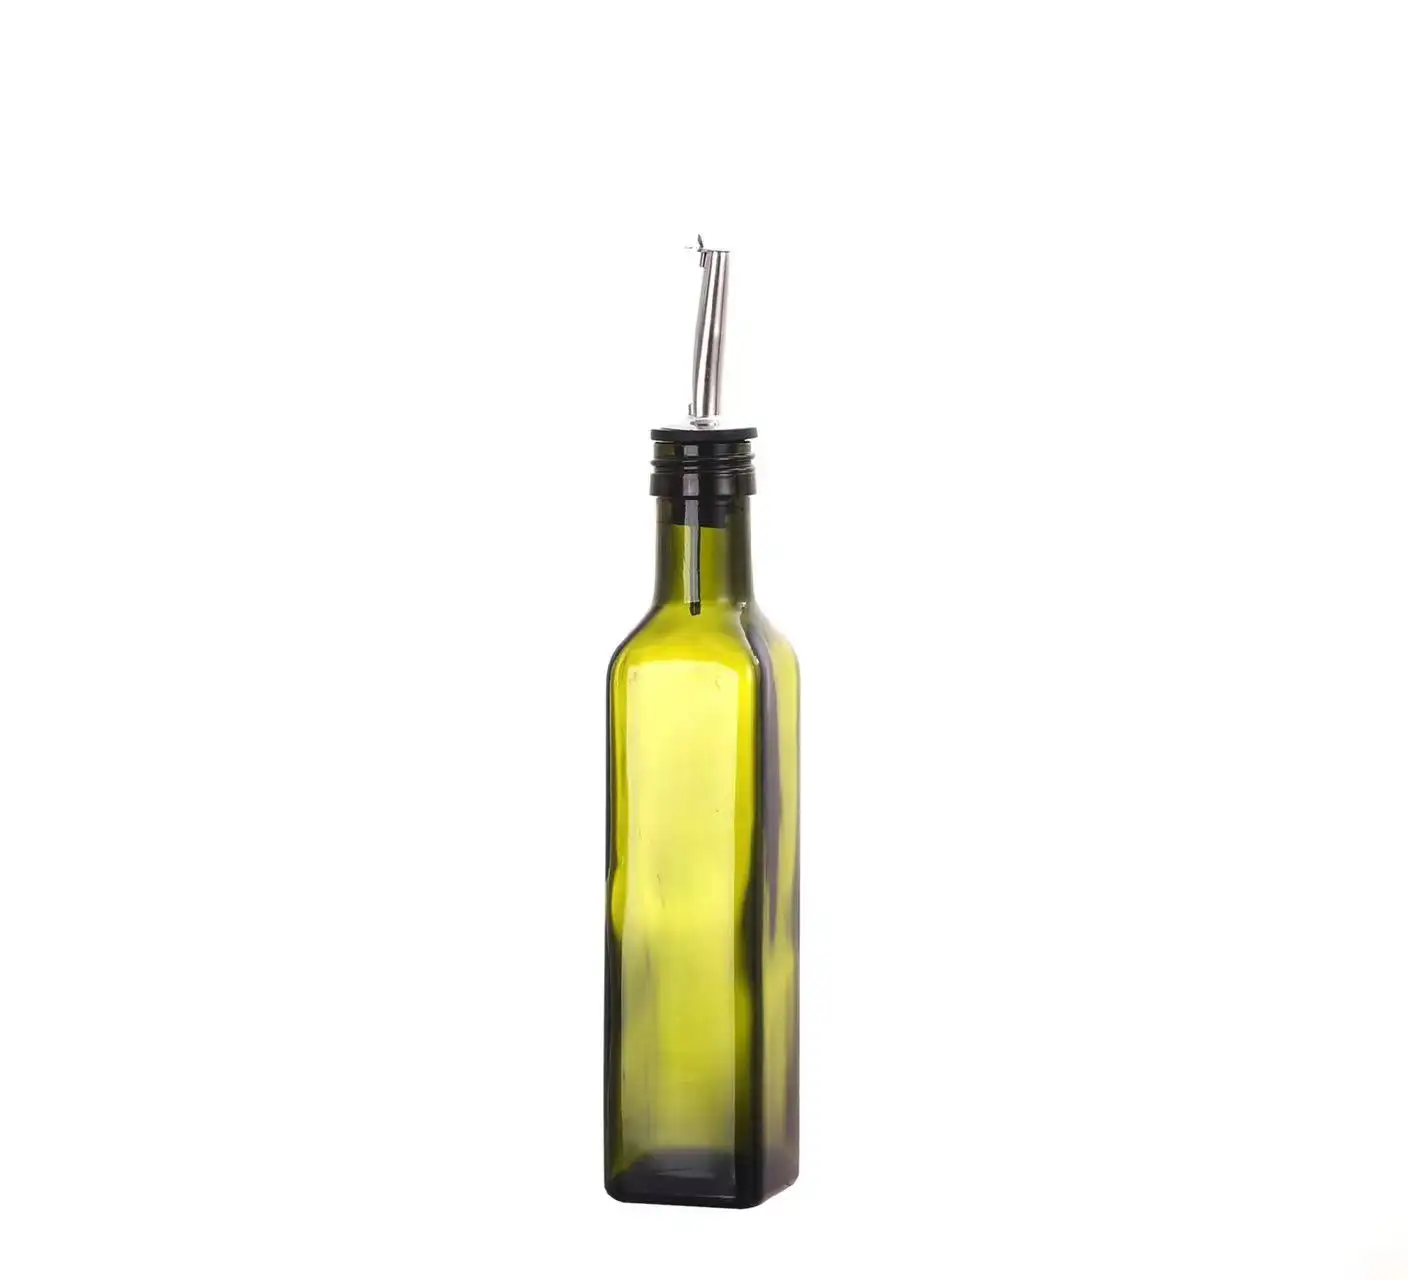 En popüler Metal kırmızı şarap şişesi emzik damla dökmek durdurma hızı çevirme üst paslanmaz çelik altın gümüş likör Oliver yağı şarap akıtıcı